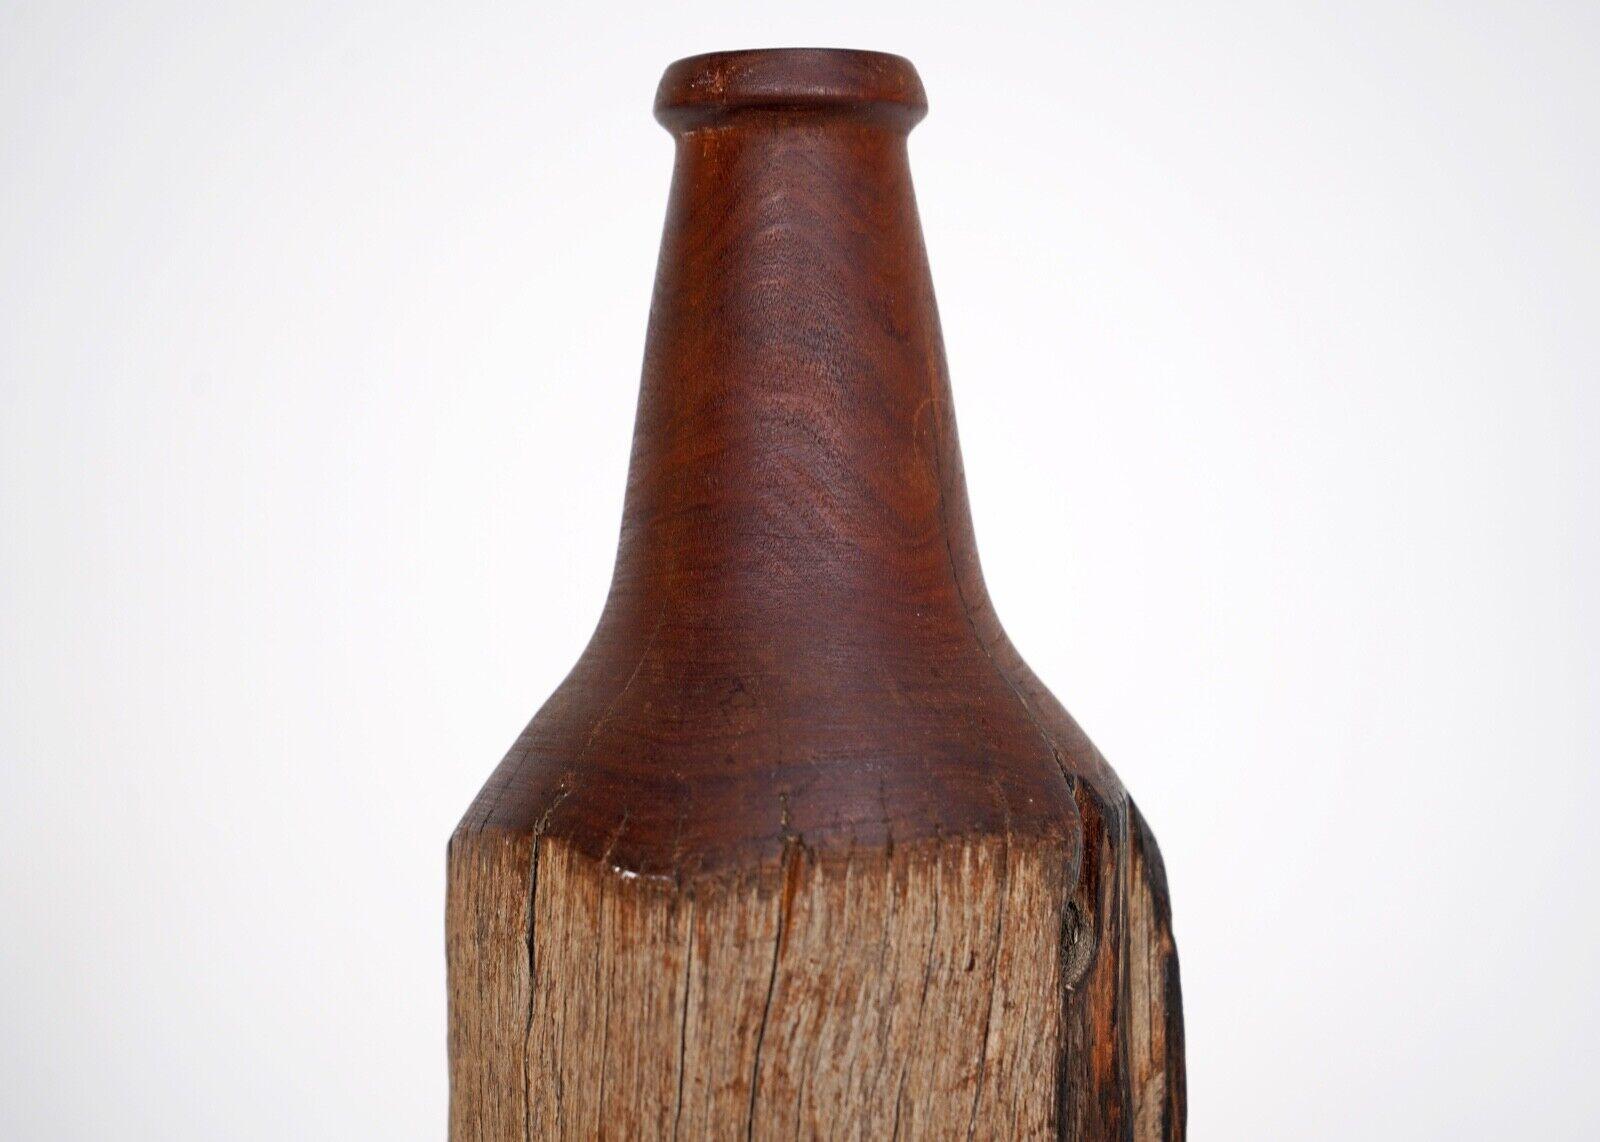 Sculpture en bois tourné représentant une bouteille.
Peut-être fabriqué à partir de bois flotté.
Une pièce tactile avec une belle forme.
 Signé et daté sur la base. Daté de 94.
 
Dimensions
Hauteur - 20cm
Diamètre 10,5 cm
 